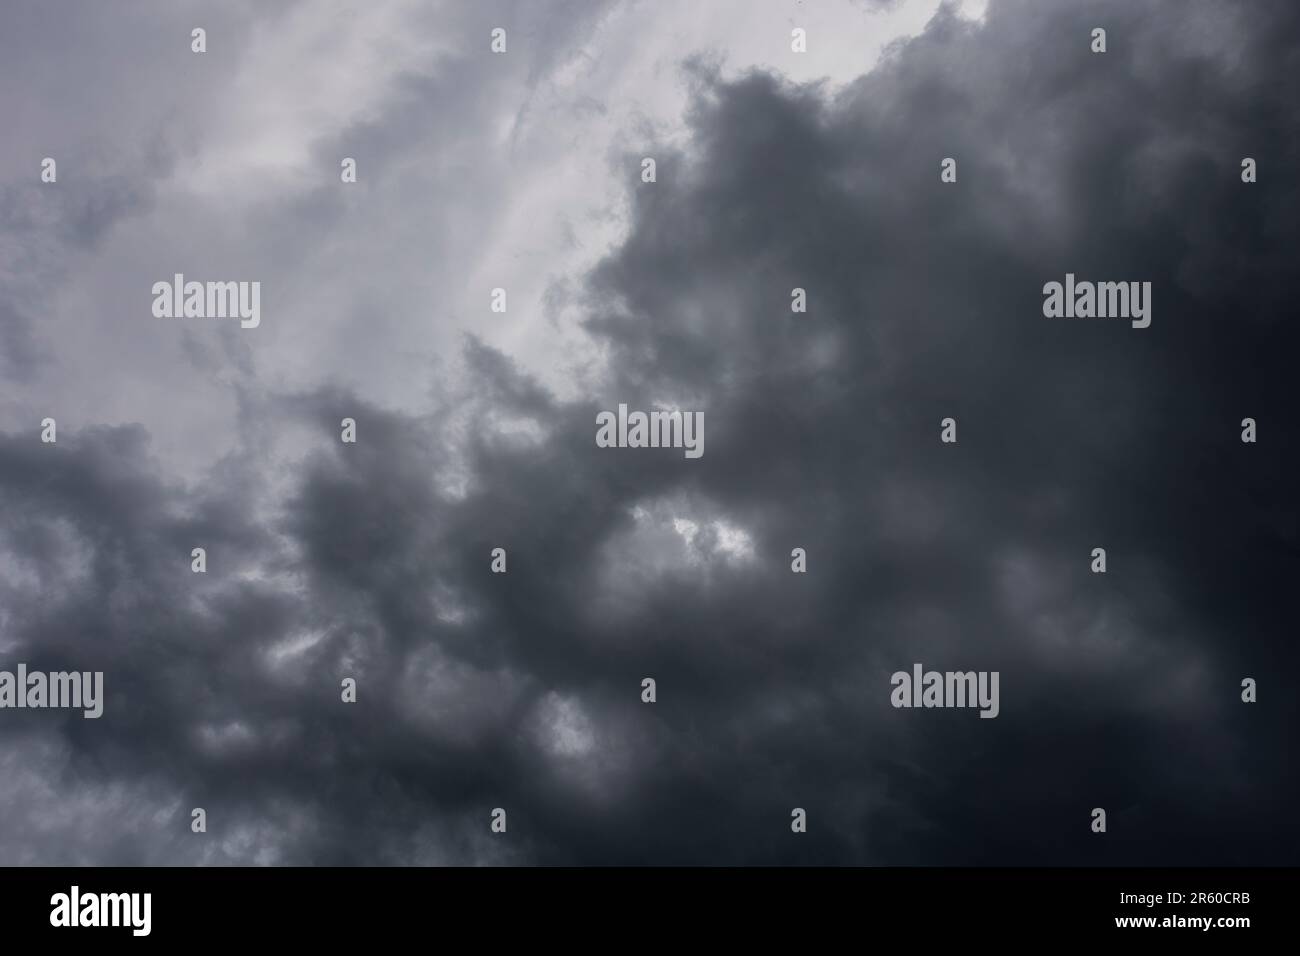 Schauen Sie den zenit-Himmel mit Sturmwolken, die sich dem Hintergrund nähern Stockfoto